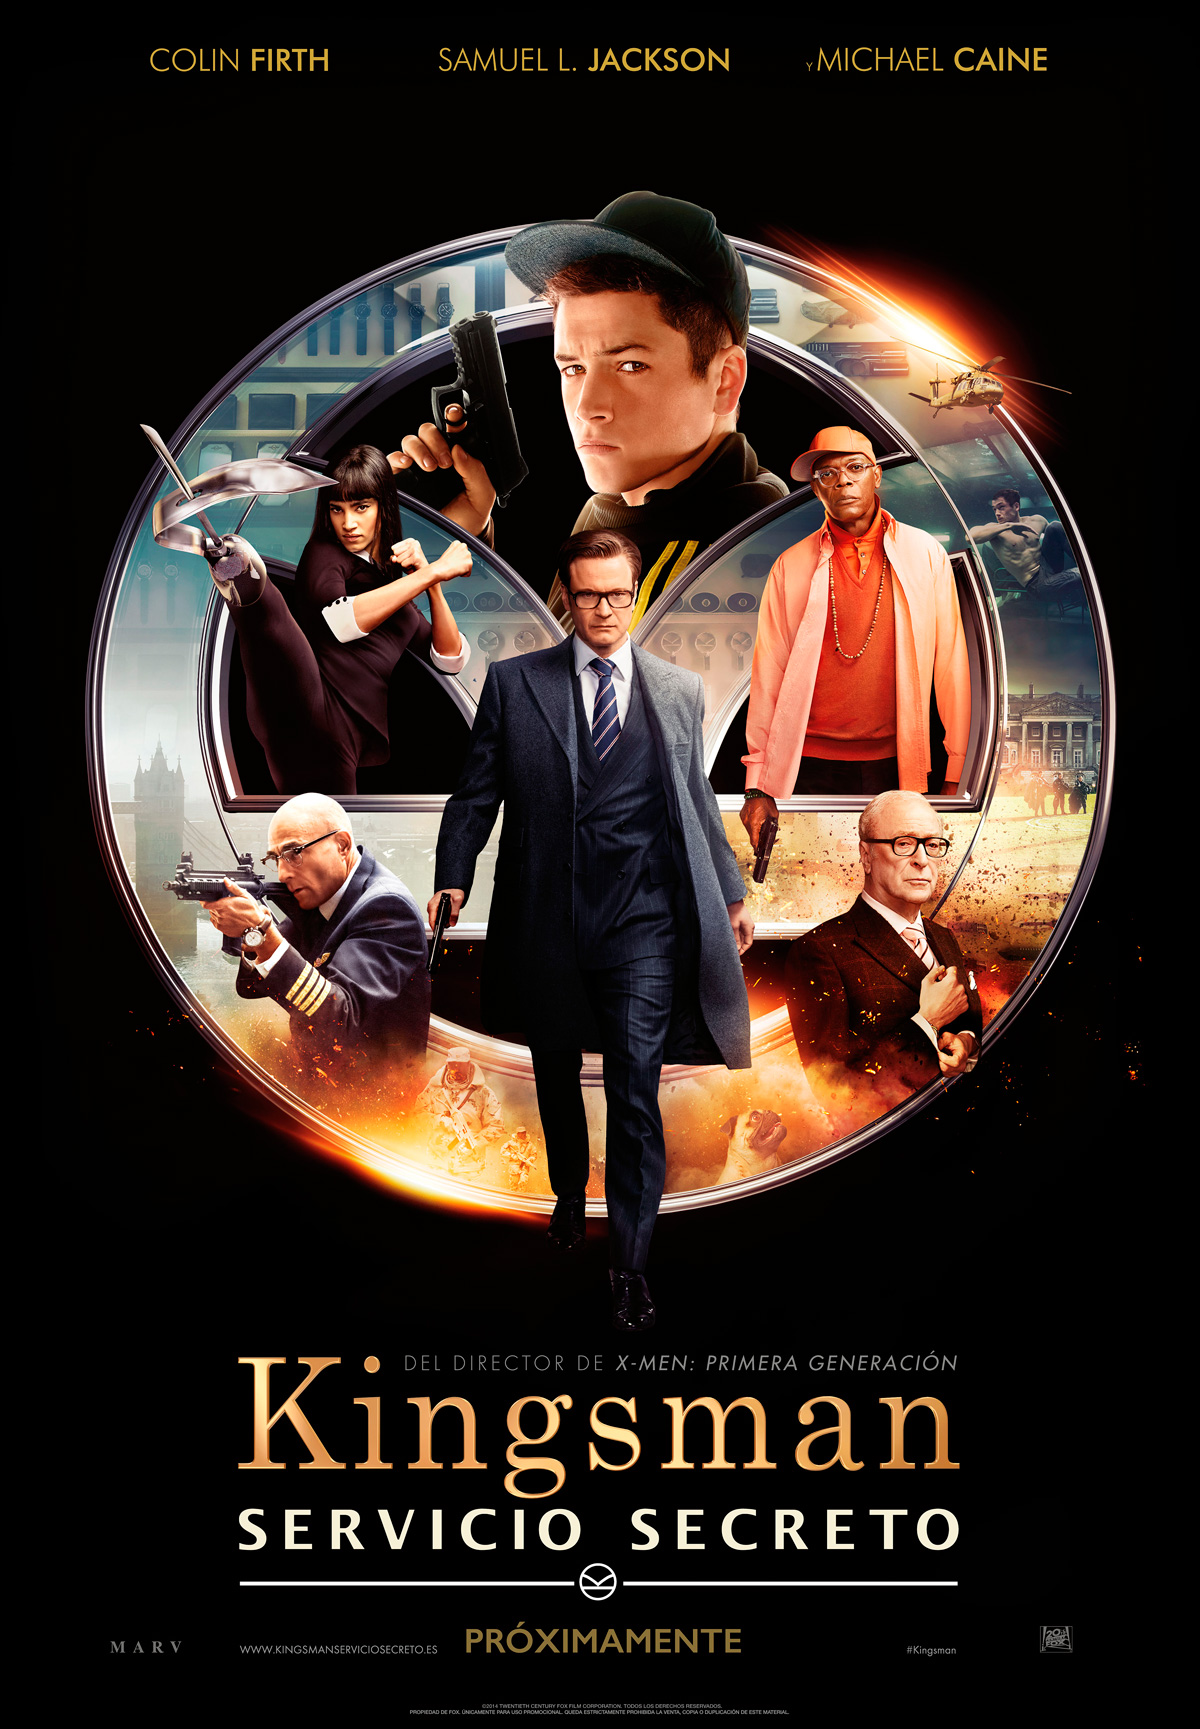 Crítica de la película Kingsman Servicio Secreto. Película realizada por Matthew Vaughn